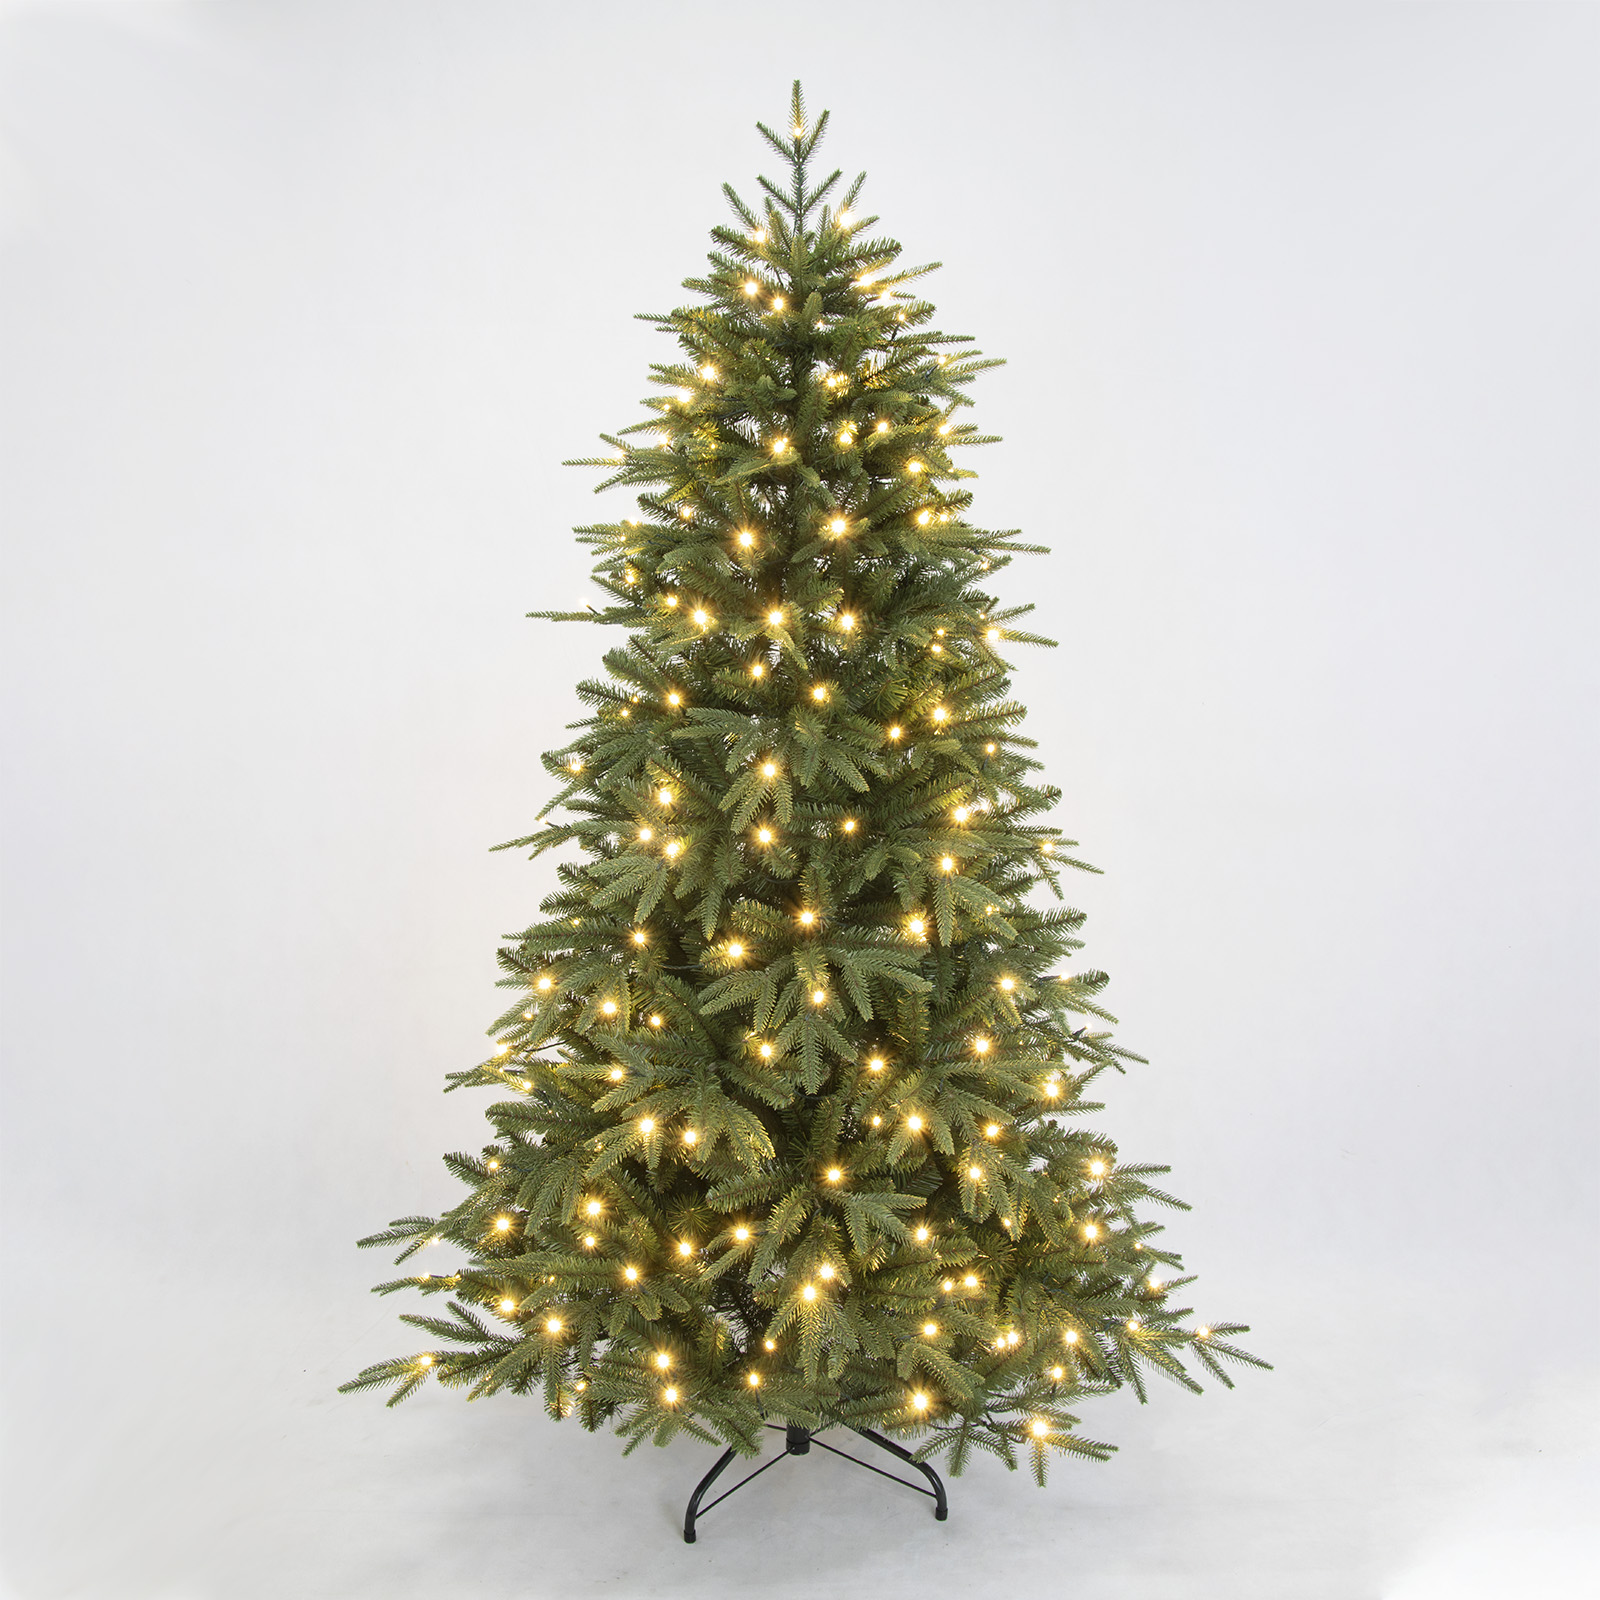 PINEFIELDS Árbol de Navidad preiluminado de 6 pies, árbol de Navidad artificial con luces, árbol de Navidad iluminado, árbol de Navidad realista, 240 luces LED cálidas controladas por aplicación, puntas mixtas de PE, bisagra, base de metal